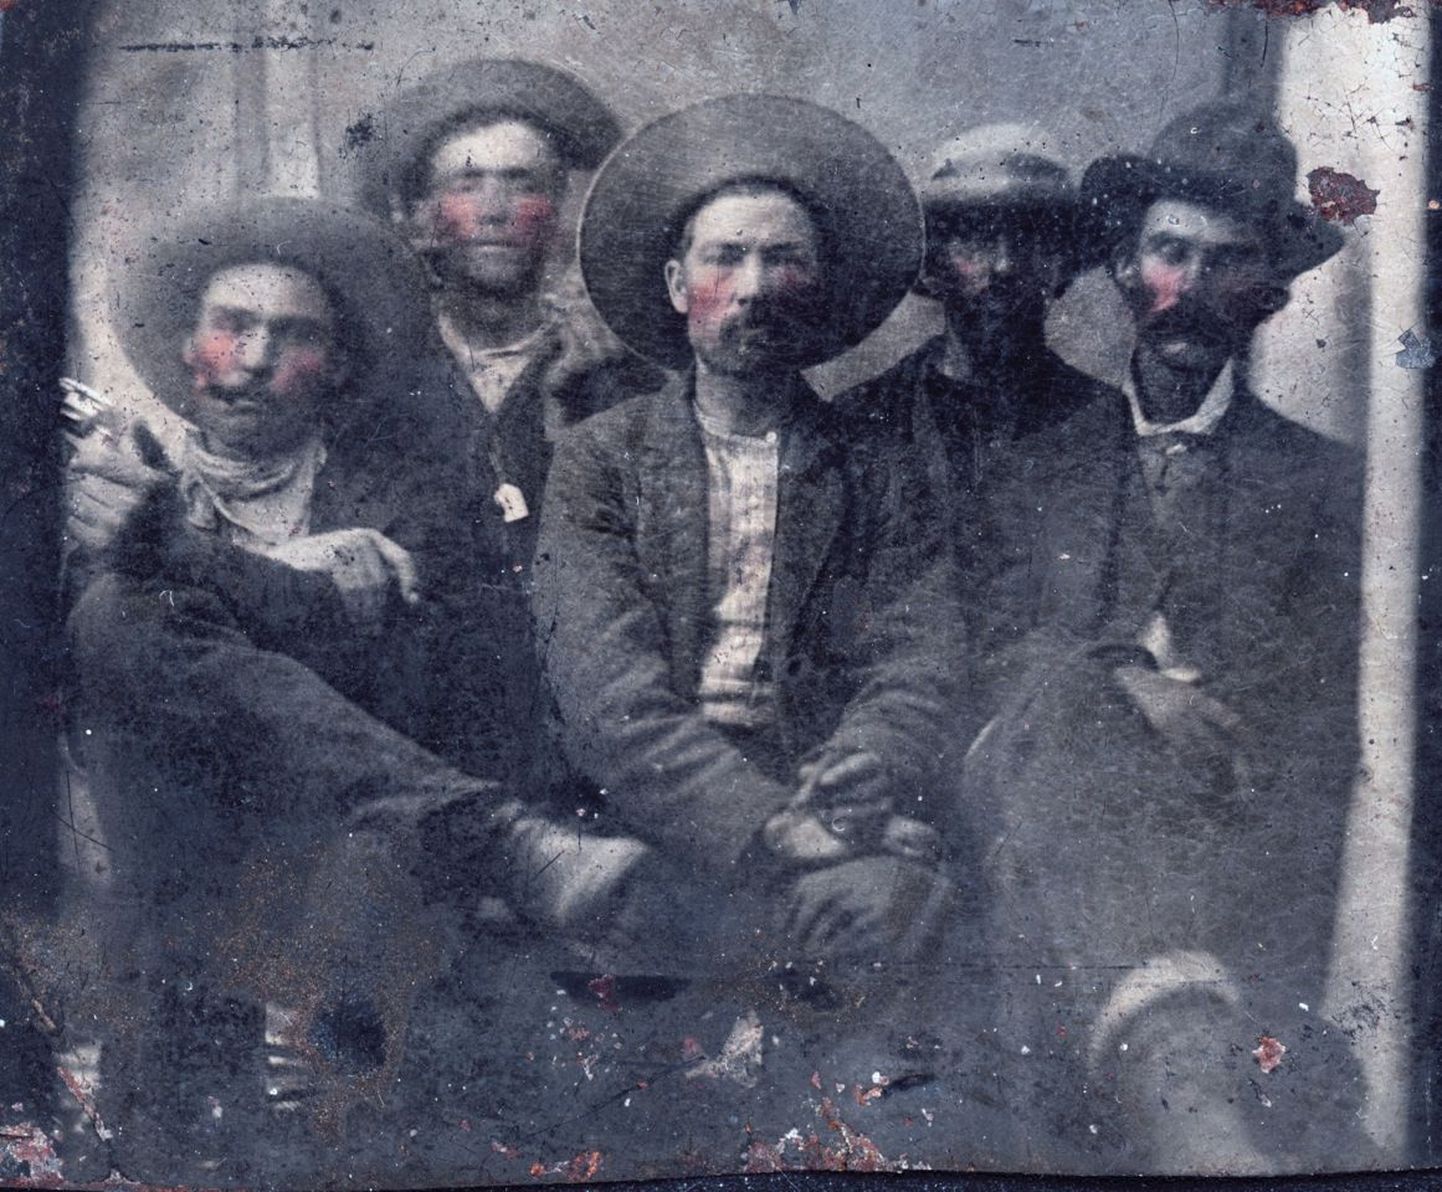 Seni ainus teadaolev ülesvõte, kus poseerivad koos lindprii Billy the Kid (vasakult teine, taga) ja Pat Garrett (paremal, musta kaabuga).